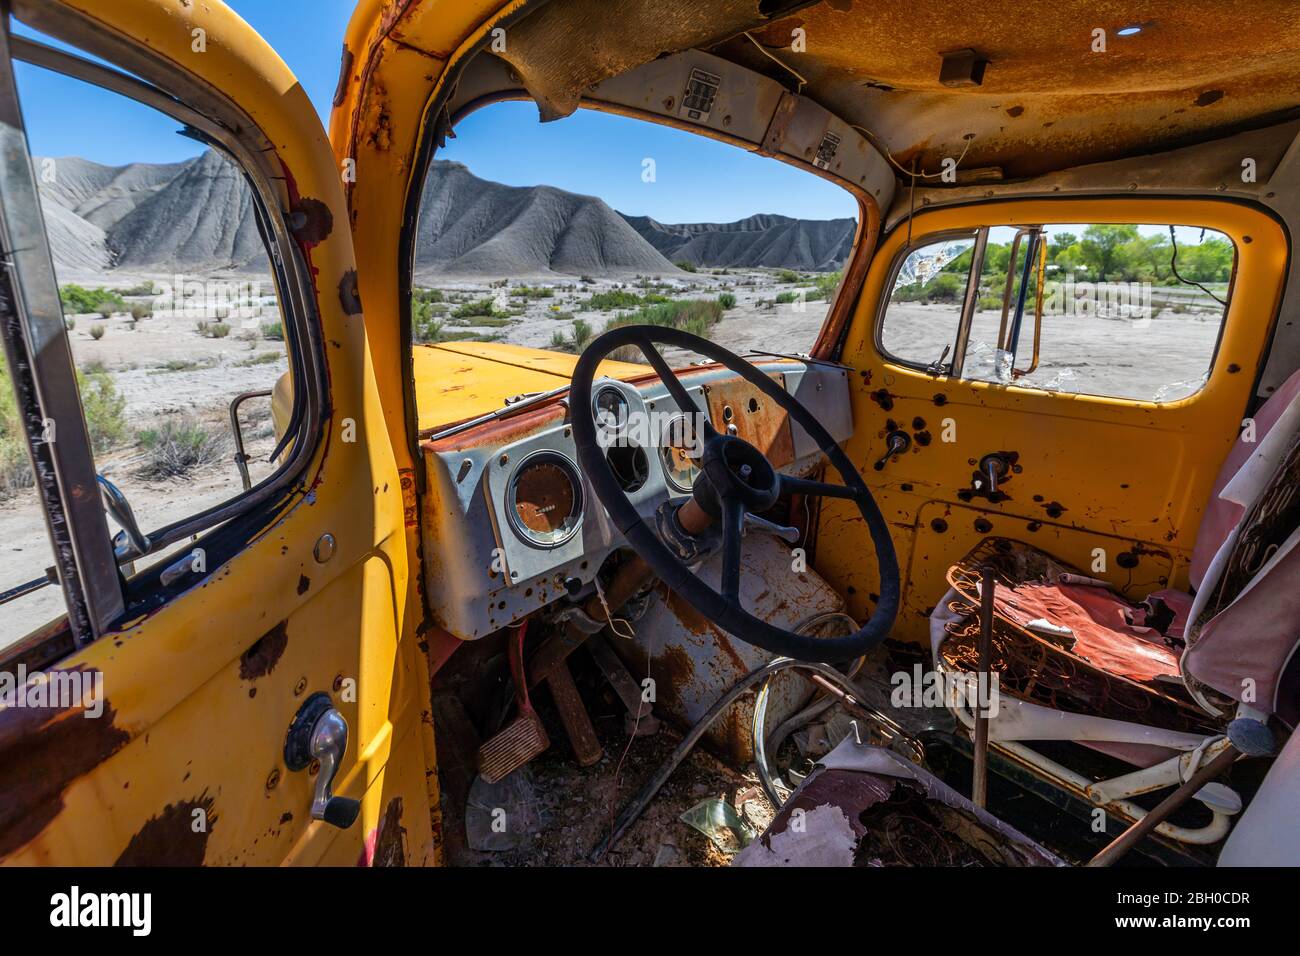 Le siège conducteur d'un mélangeur de ciment abandonné rouillé jaune camion dans une carrière de gravier Banque D'Images